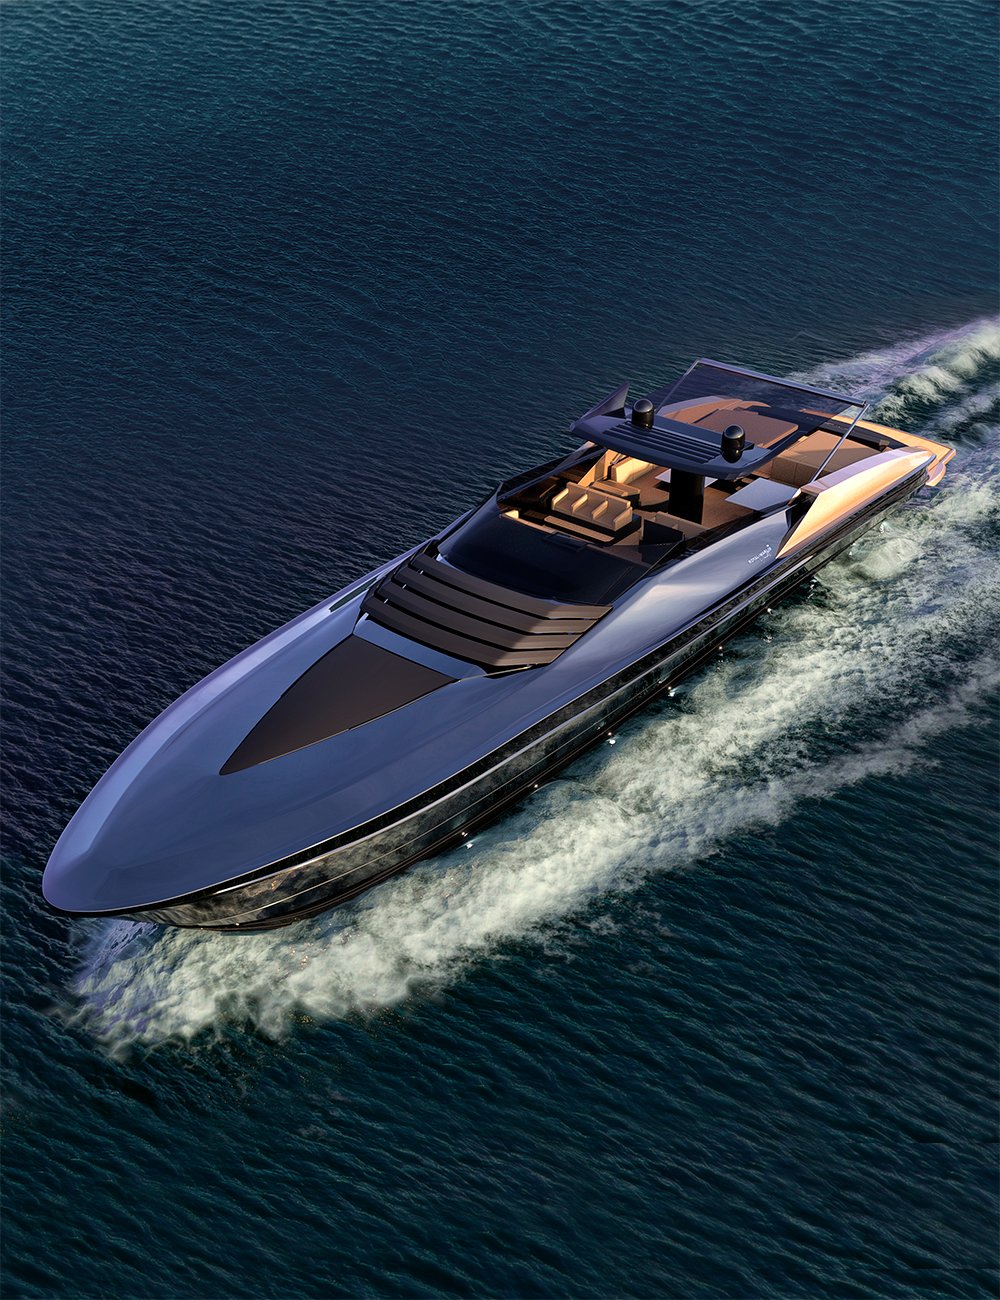 AJC Royal Marlin Yacht by: adeilsonjc, 3D Models by Daz 3D